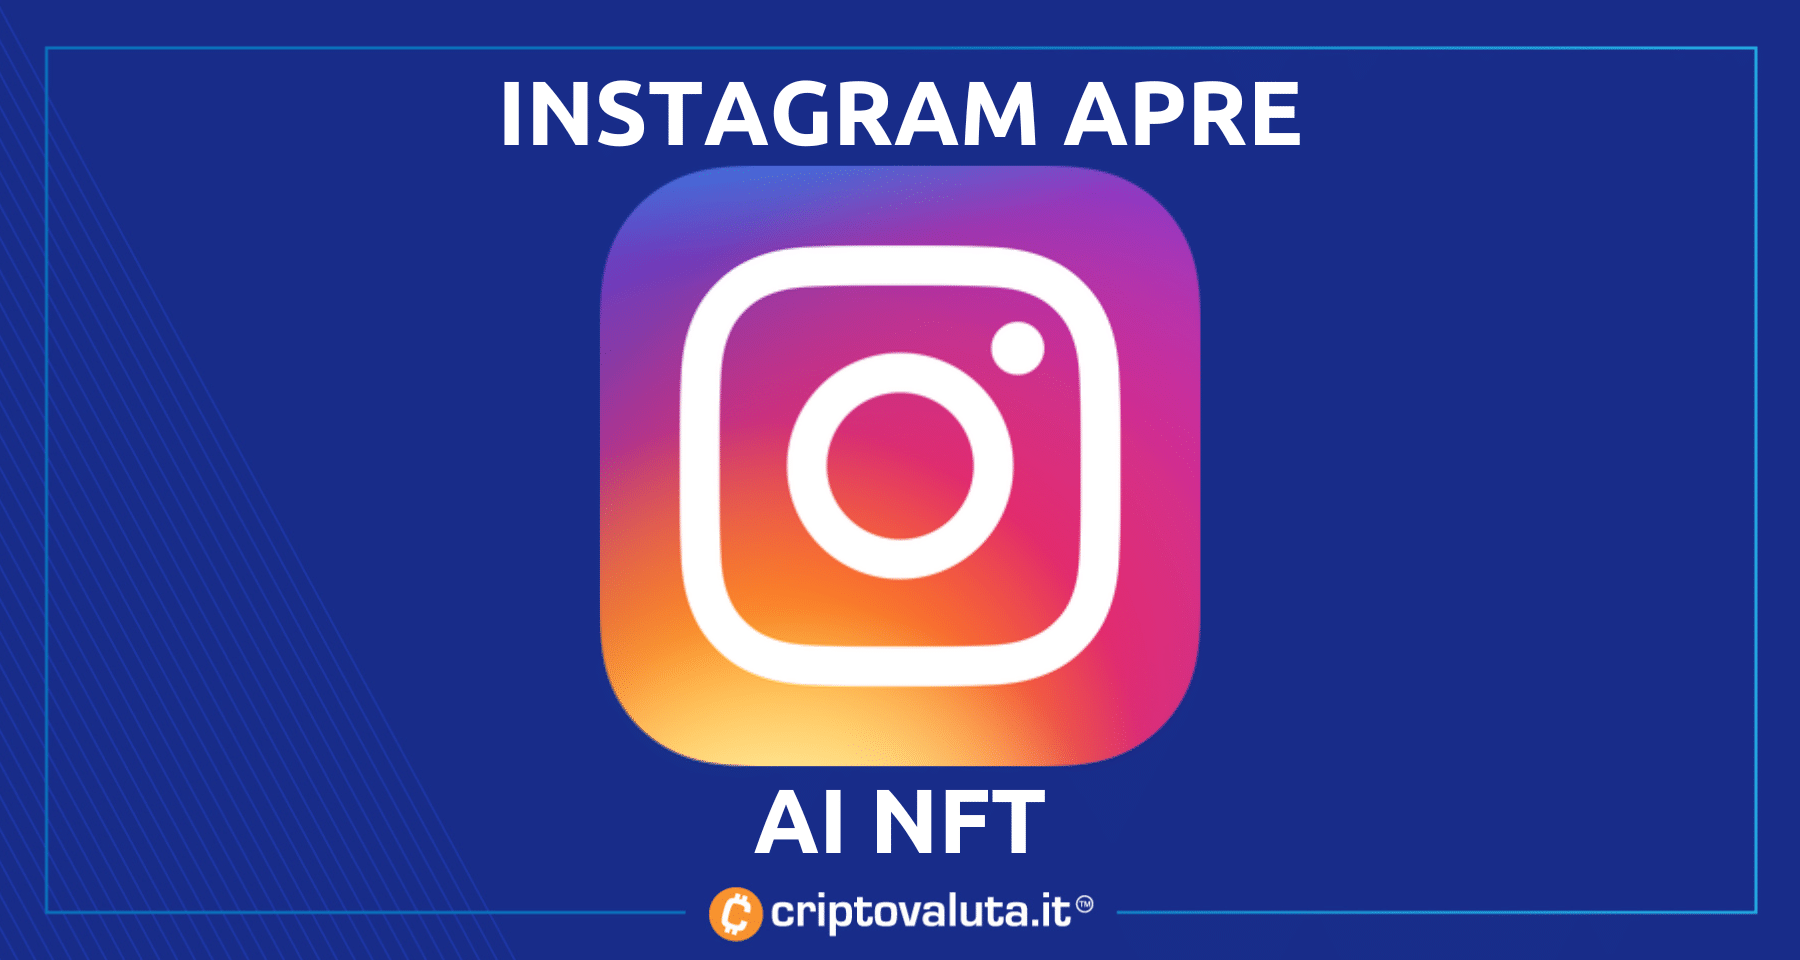 Instagram apre ai NFT | Ok per Ethereum, Solana, Polygon e Flow